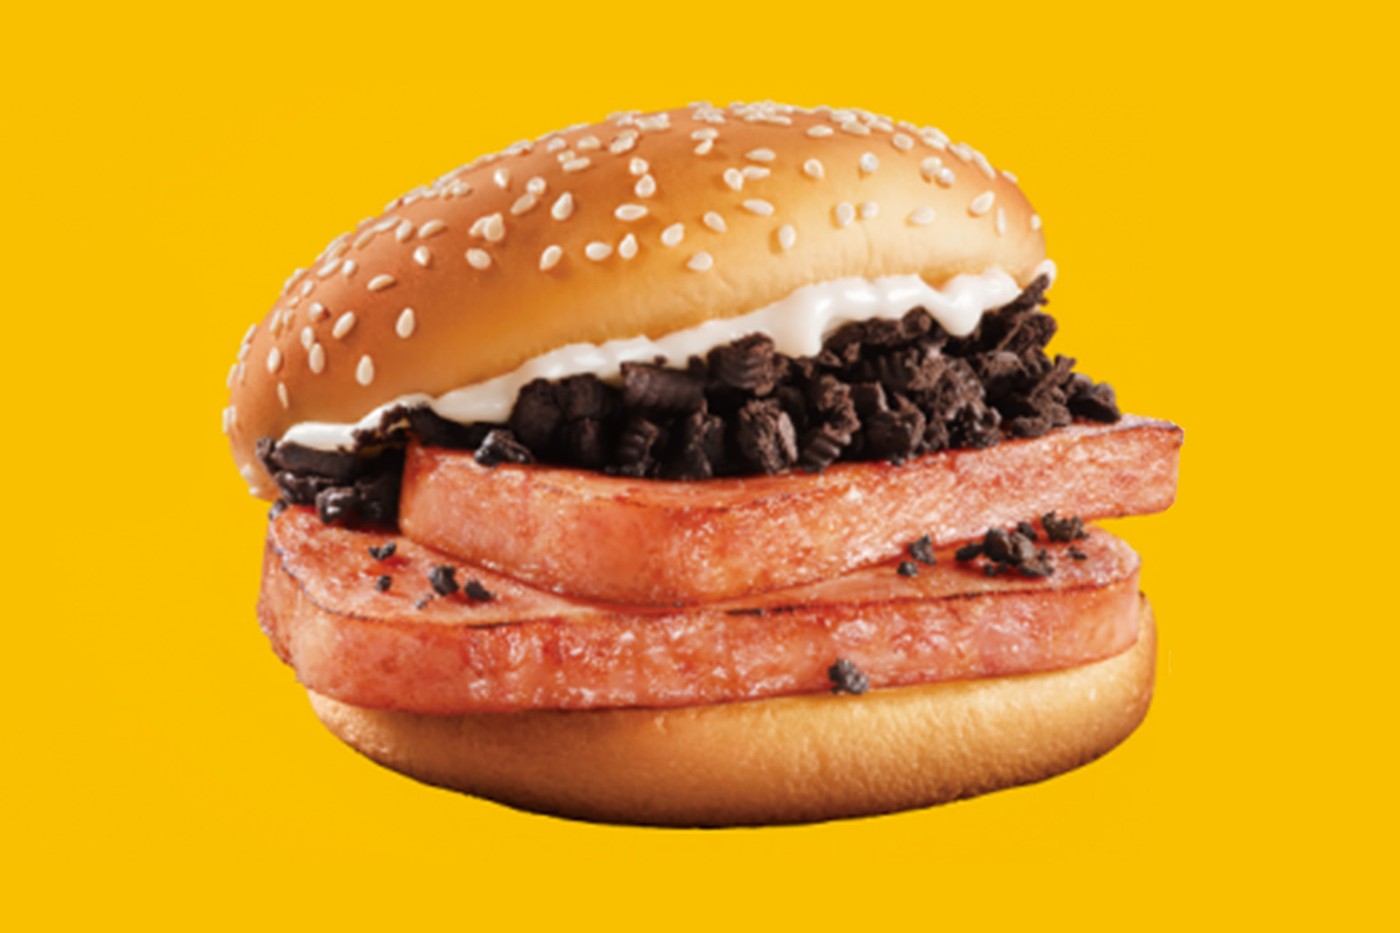 中国 McDonald's 推出期间限定「OREO × SPAM 午餐肉」汉堡